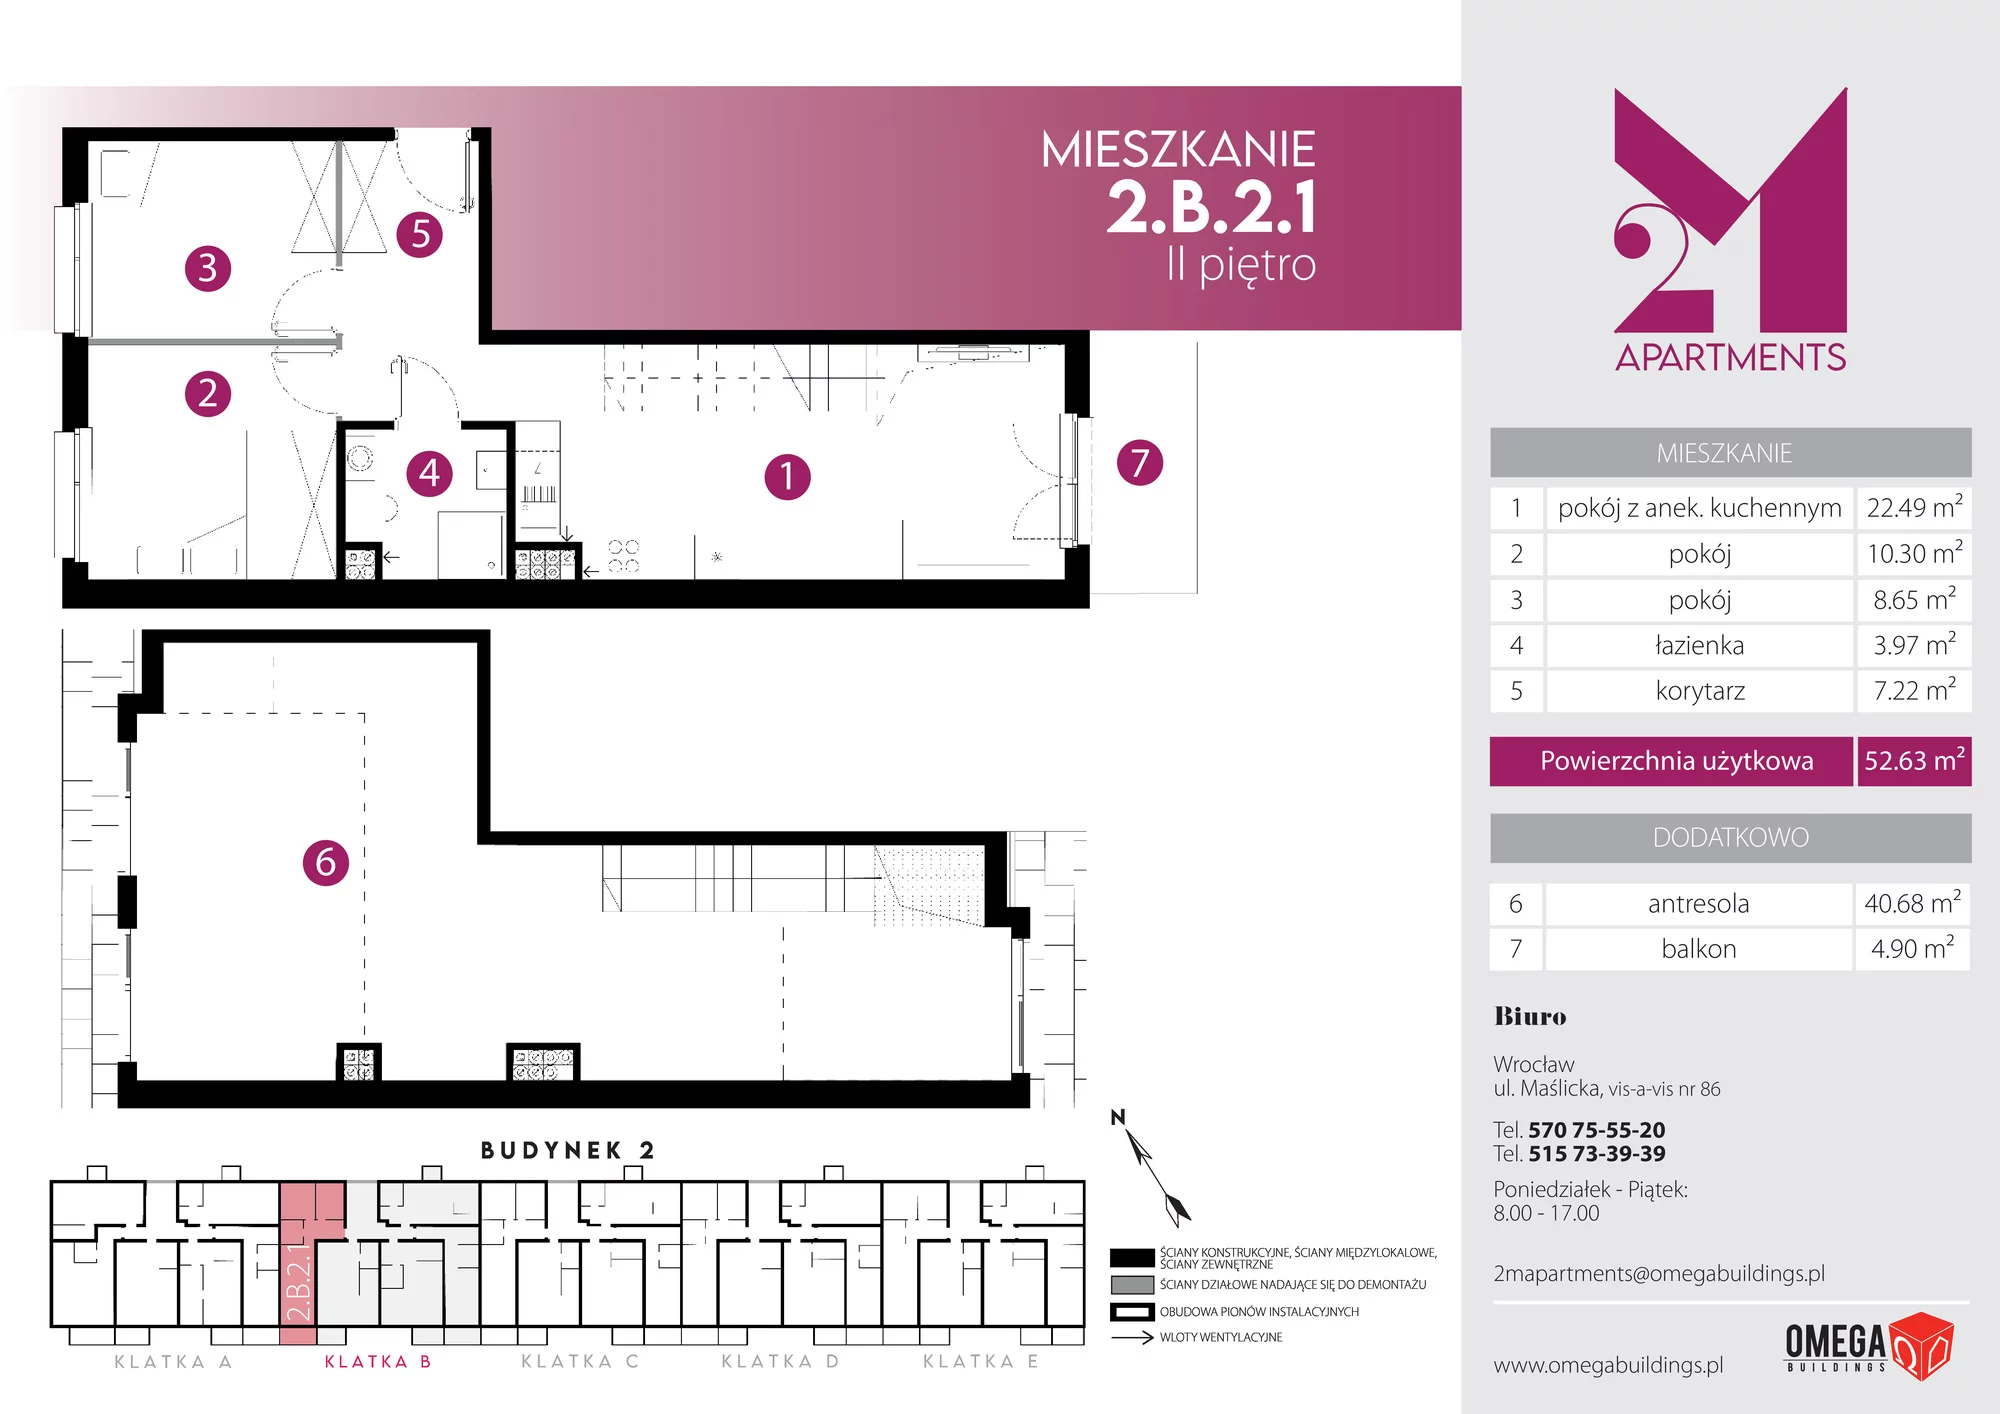 Mieszkanie 93,31 m², piętro 2, oferta nr 2.B.2.1, 2M Apartments, Wrocław, Maślice, Fabryczna, ul. Zawidowska